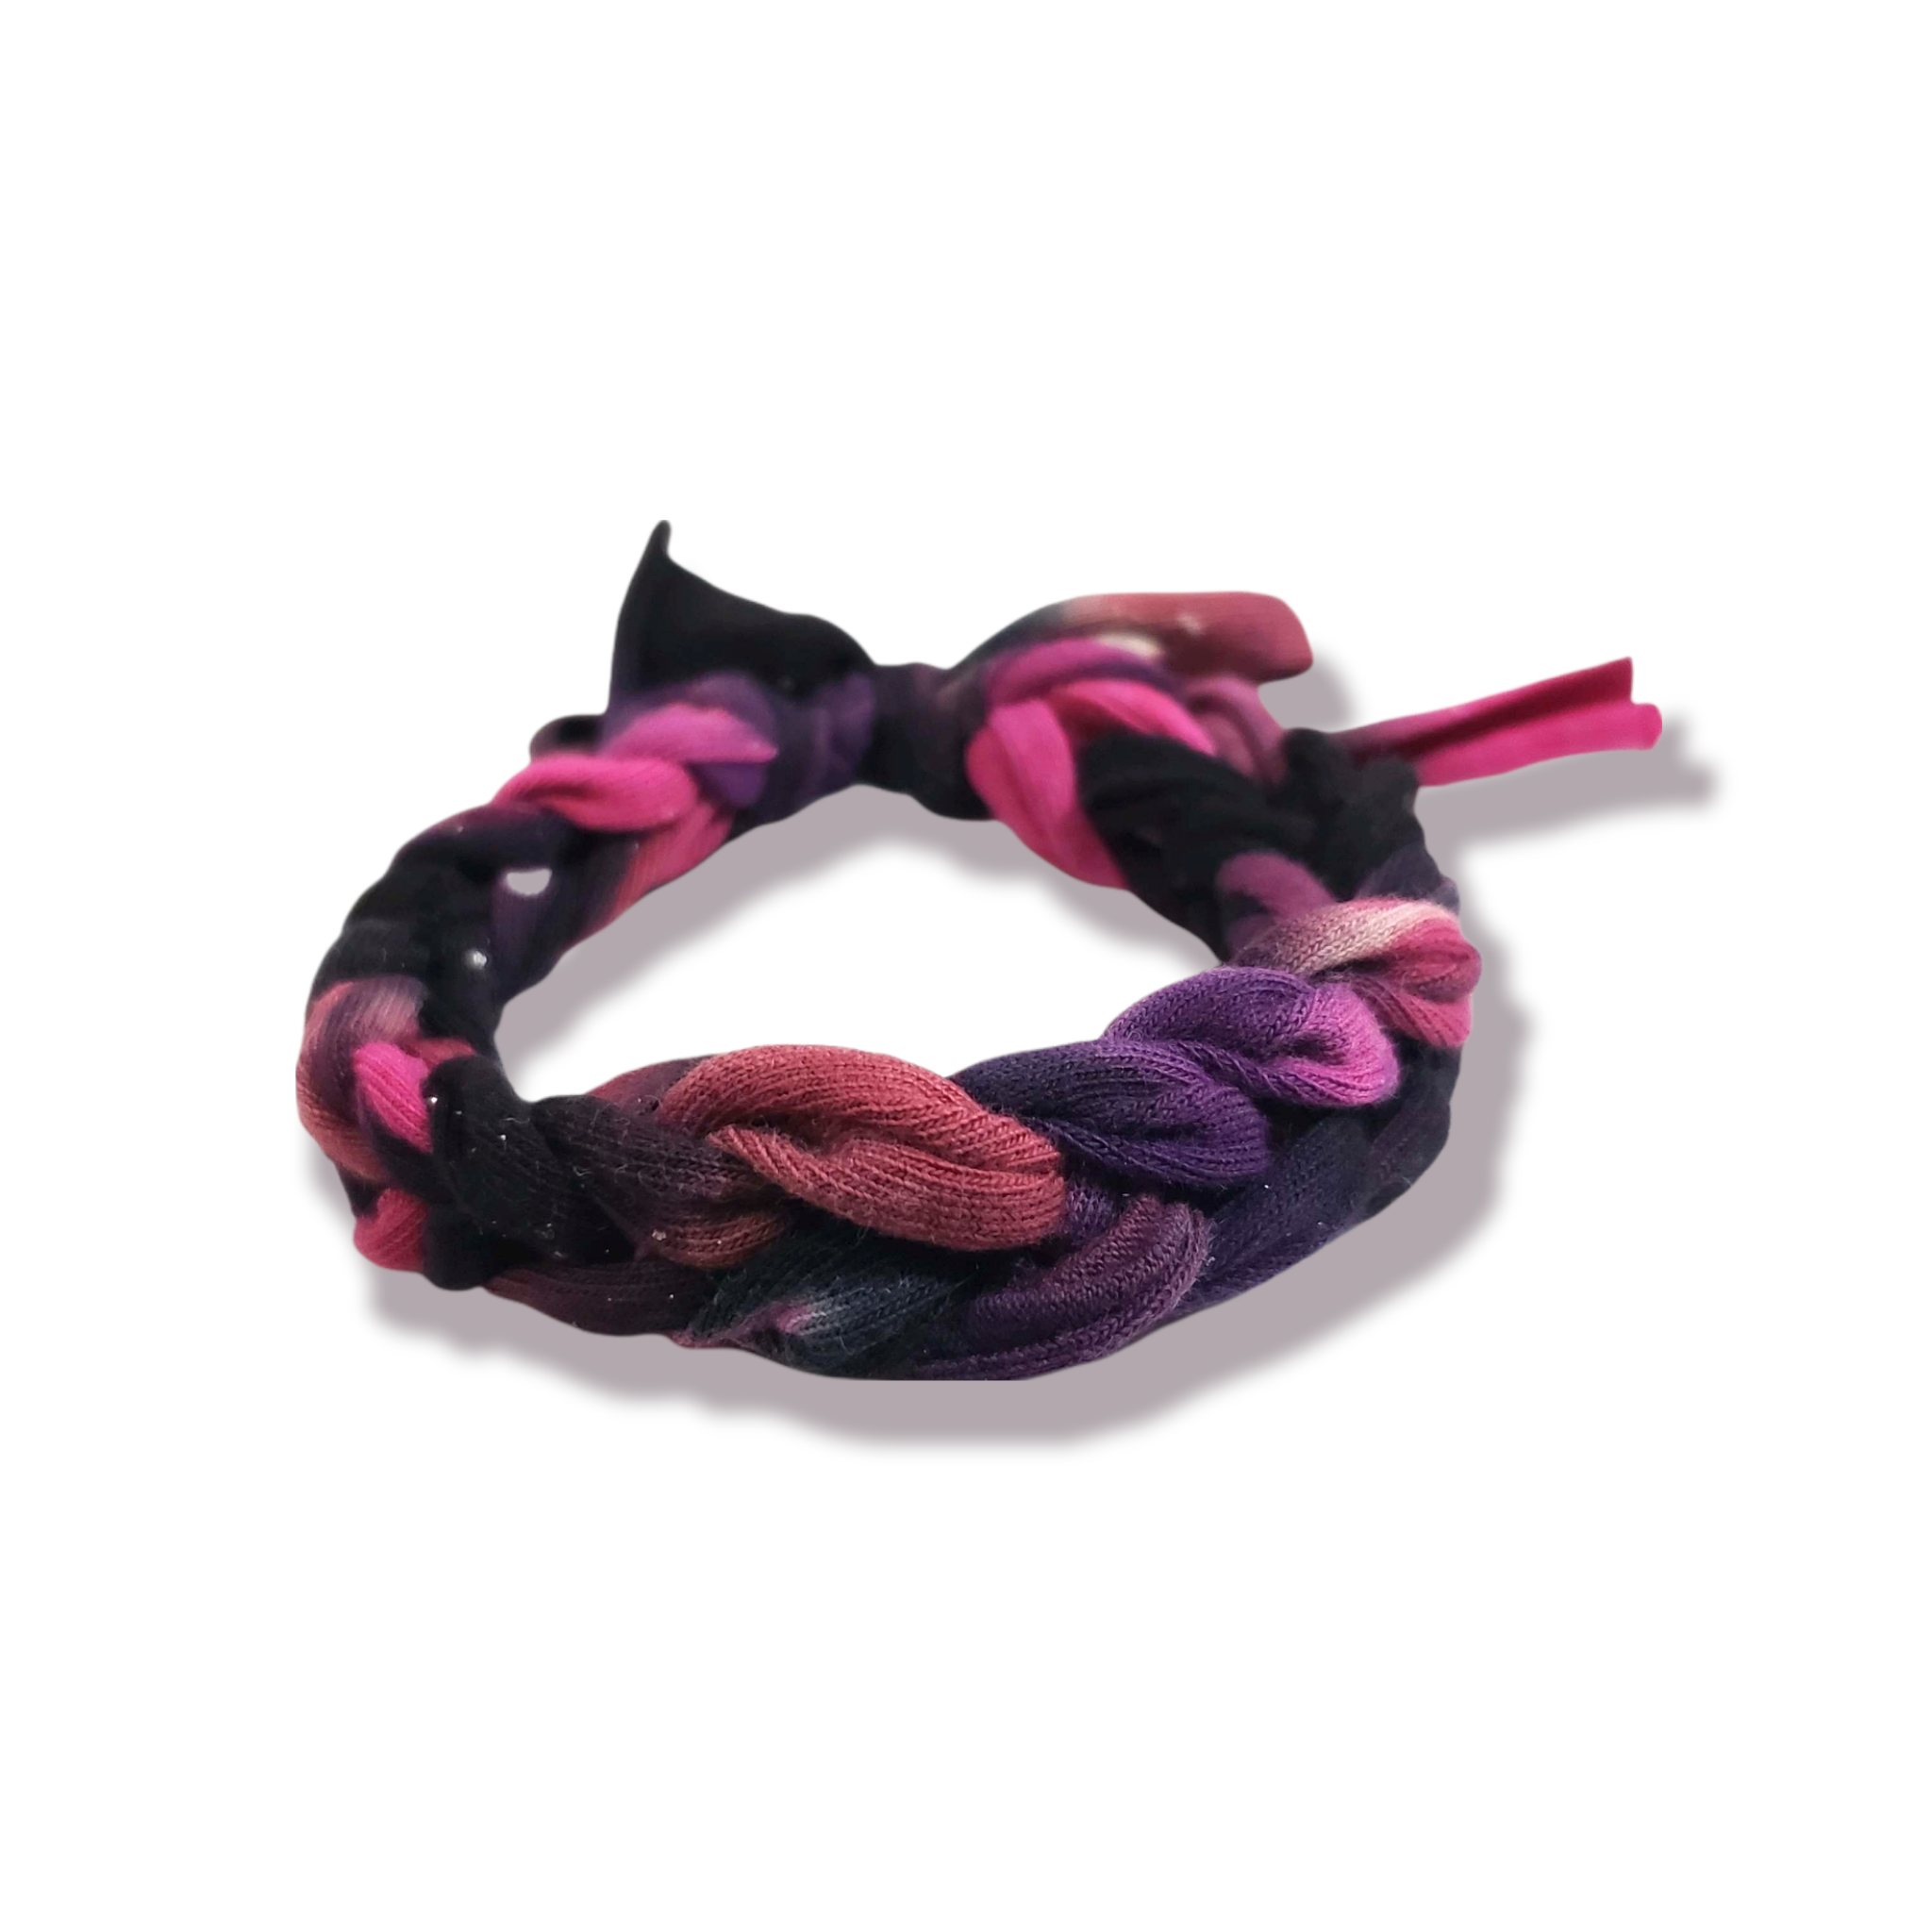 Hand Knit Rainbow Tie Dye Galaxy Bracelet